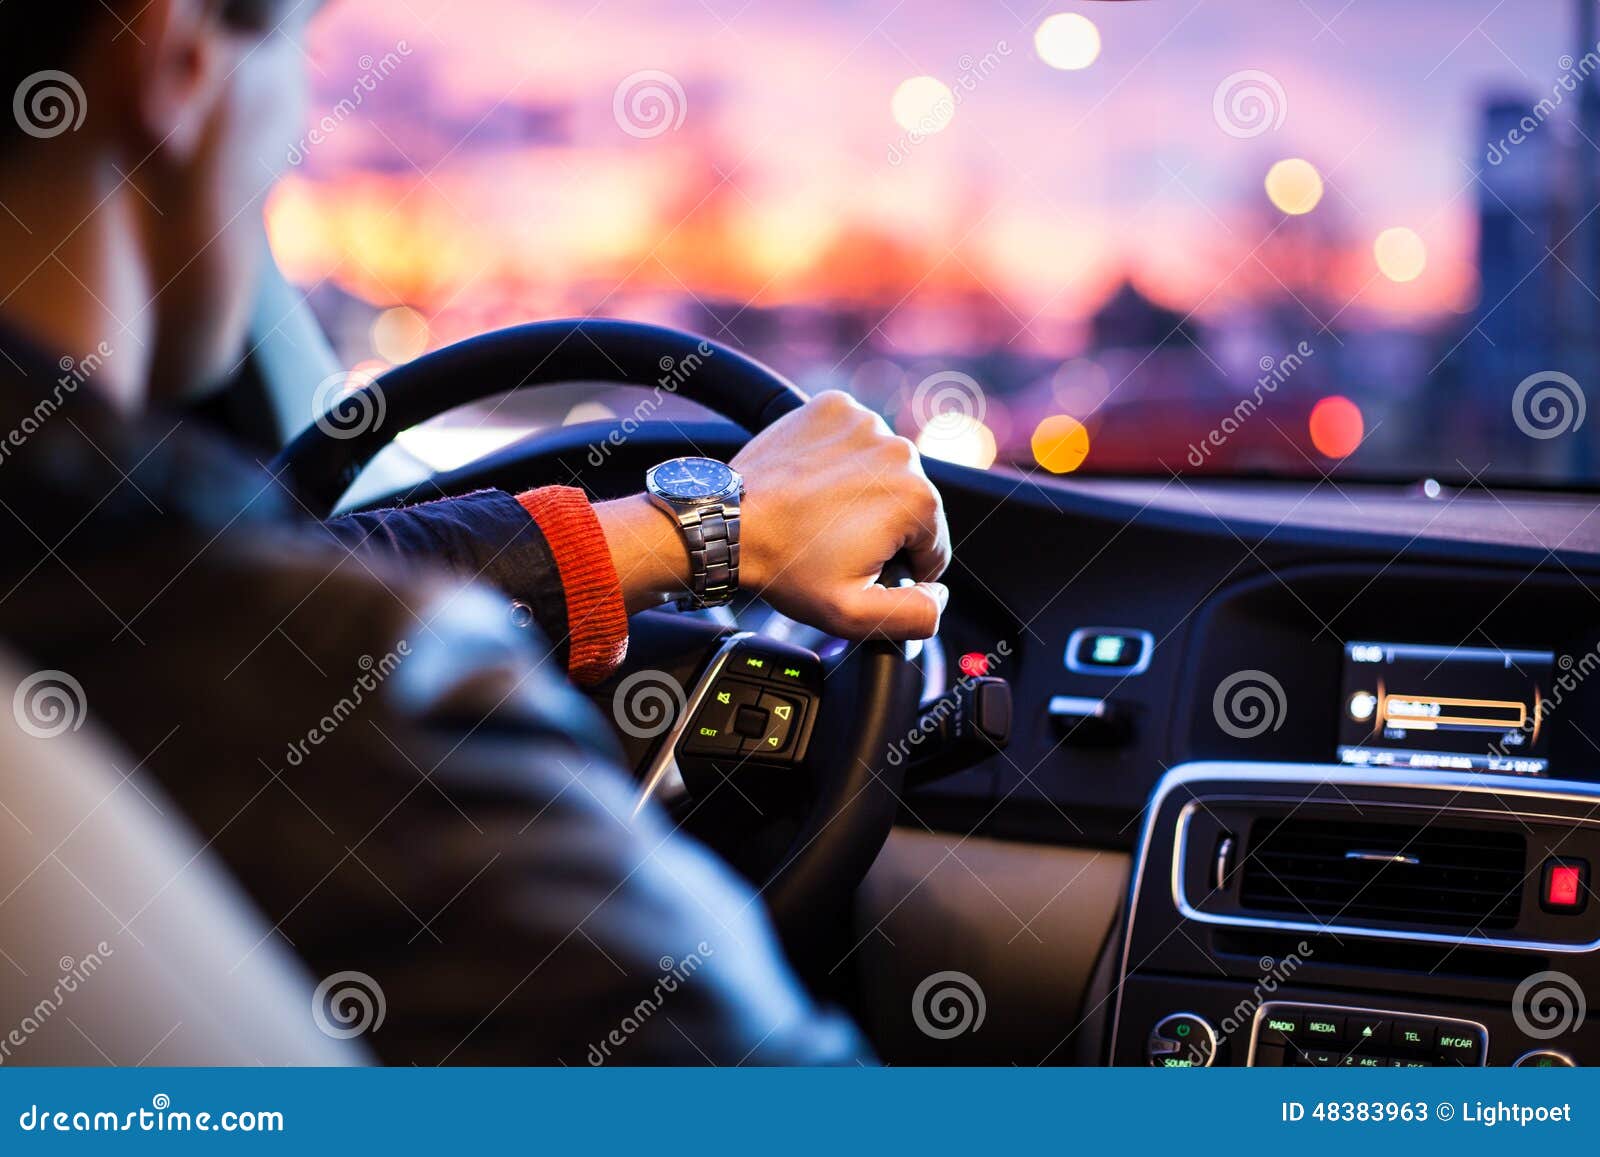 driving a car at night -man driving his modern car at night